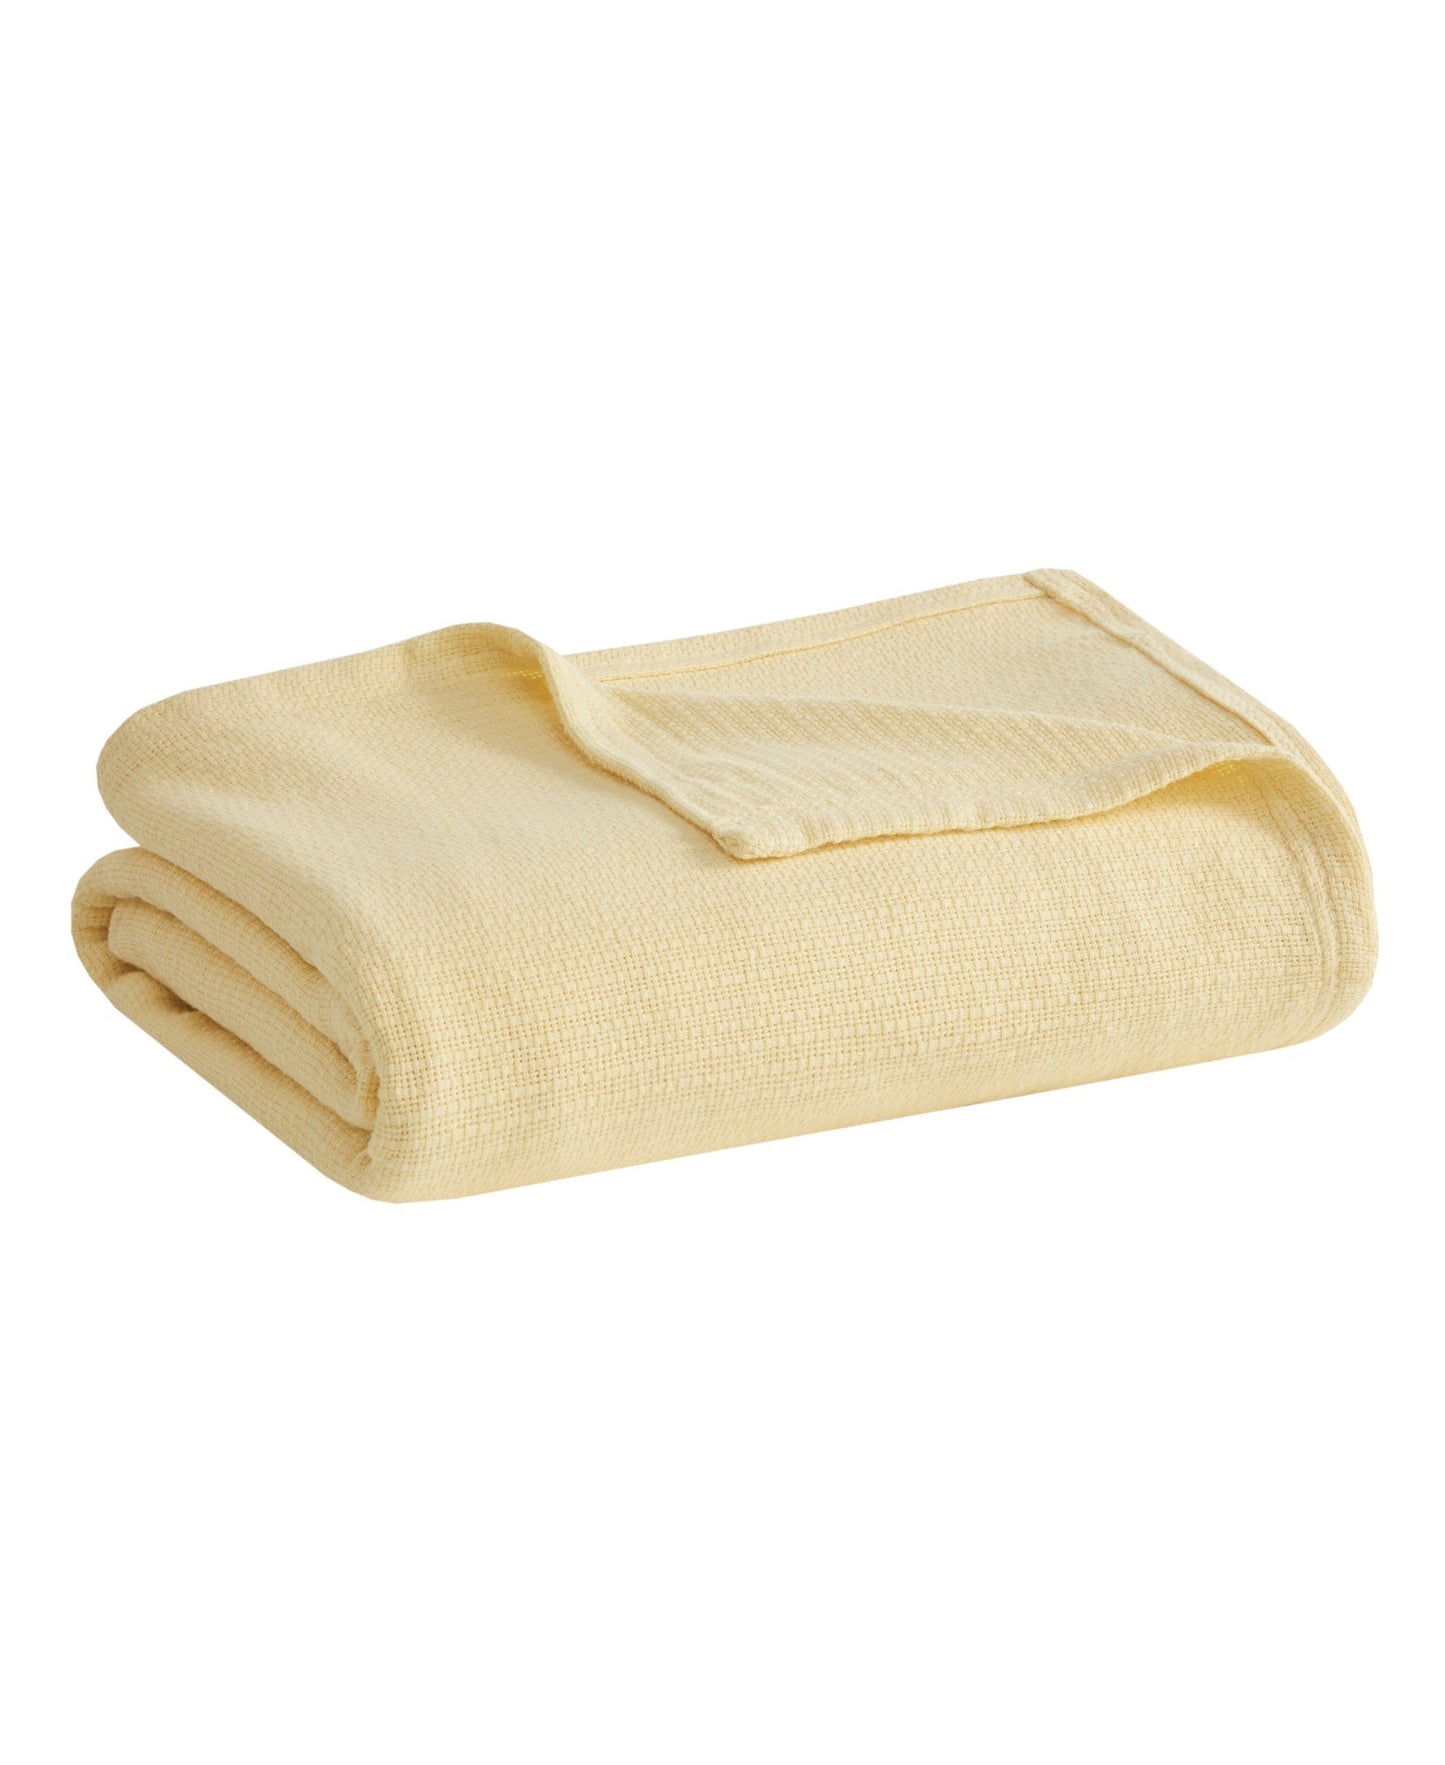 Freshspun Basketweave Cotton Blanket